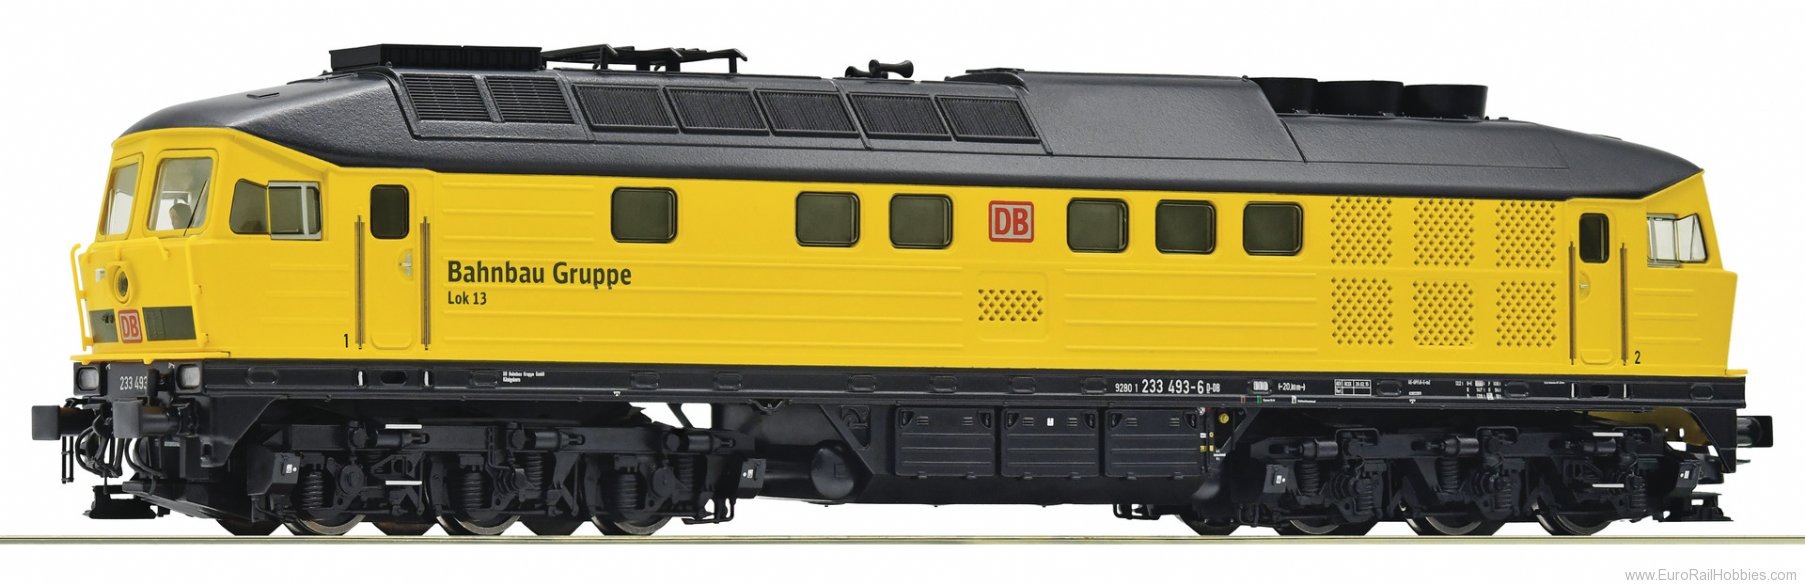 Roco 52468 DB-AG Diesel locomotive 233 493-6 